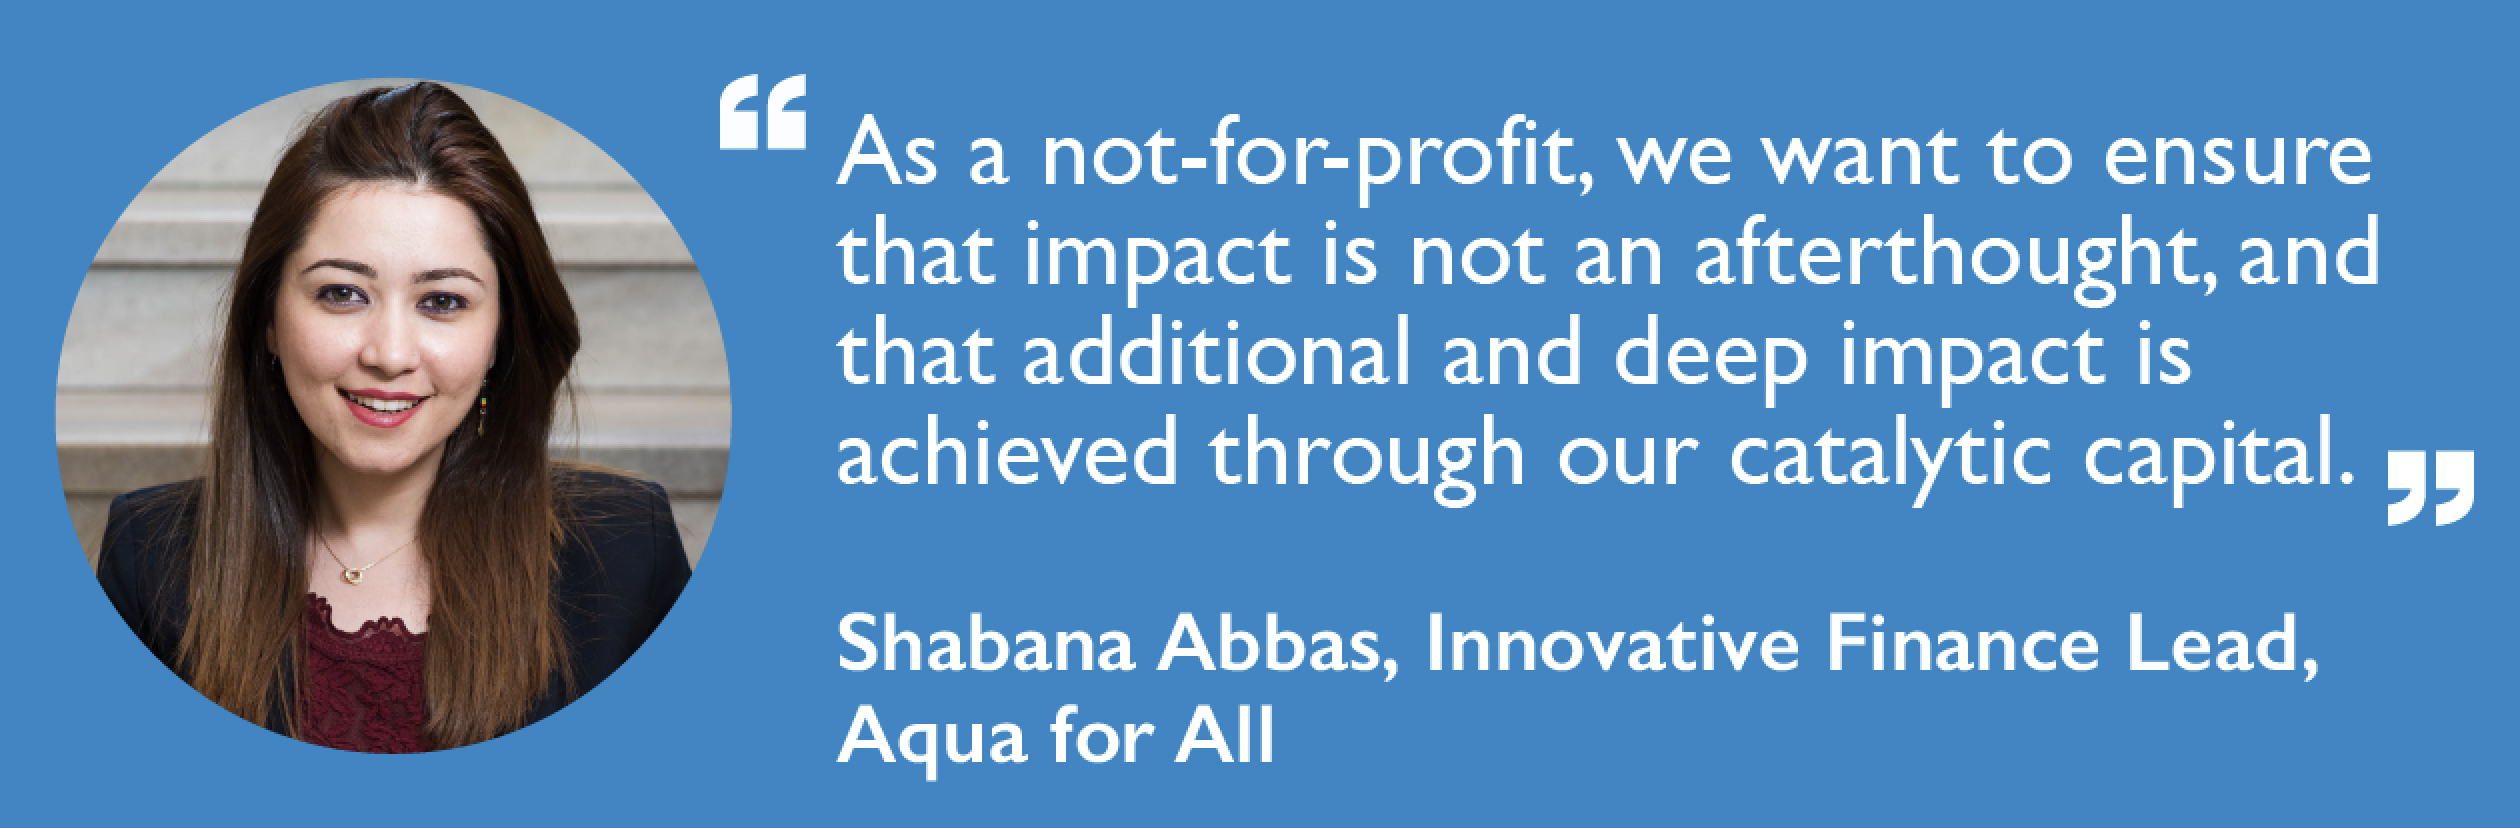 Aqua for All member spotlight with Shabana Abbas